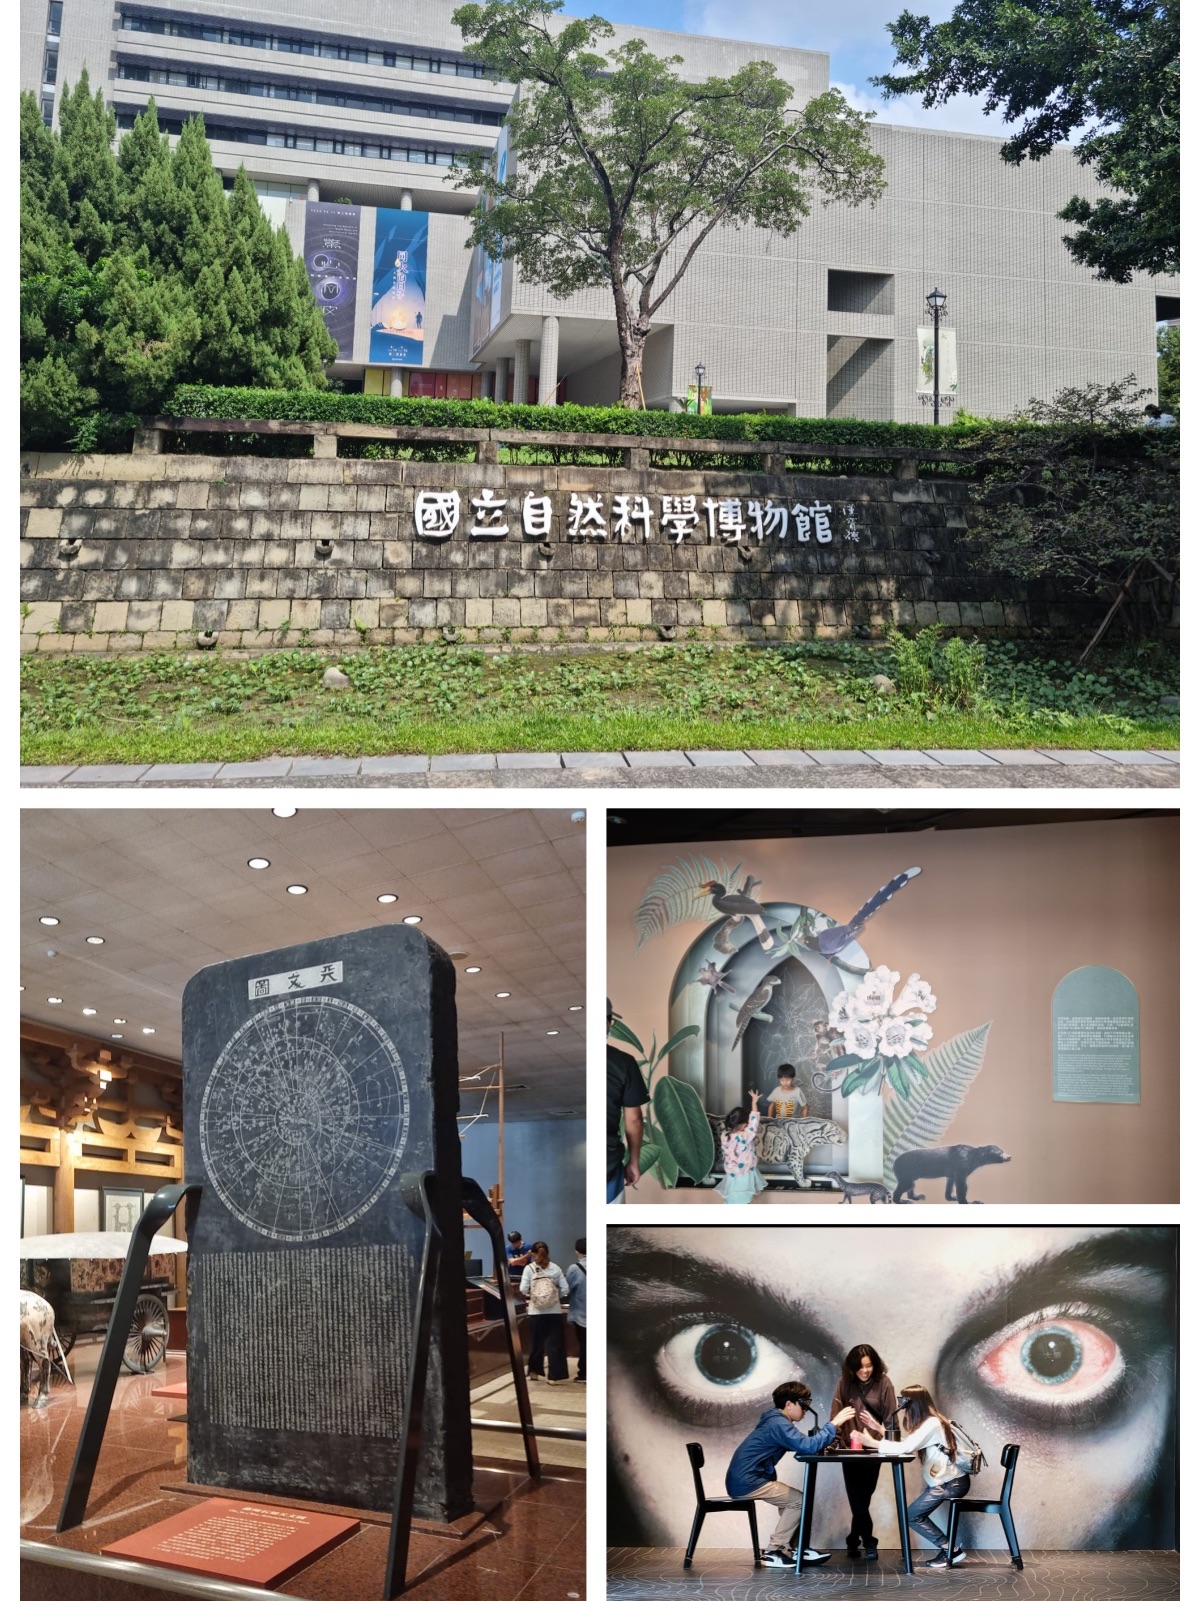 台湾自然科学博物馆亲子打卡点👍🏻旅游途中长见识👀